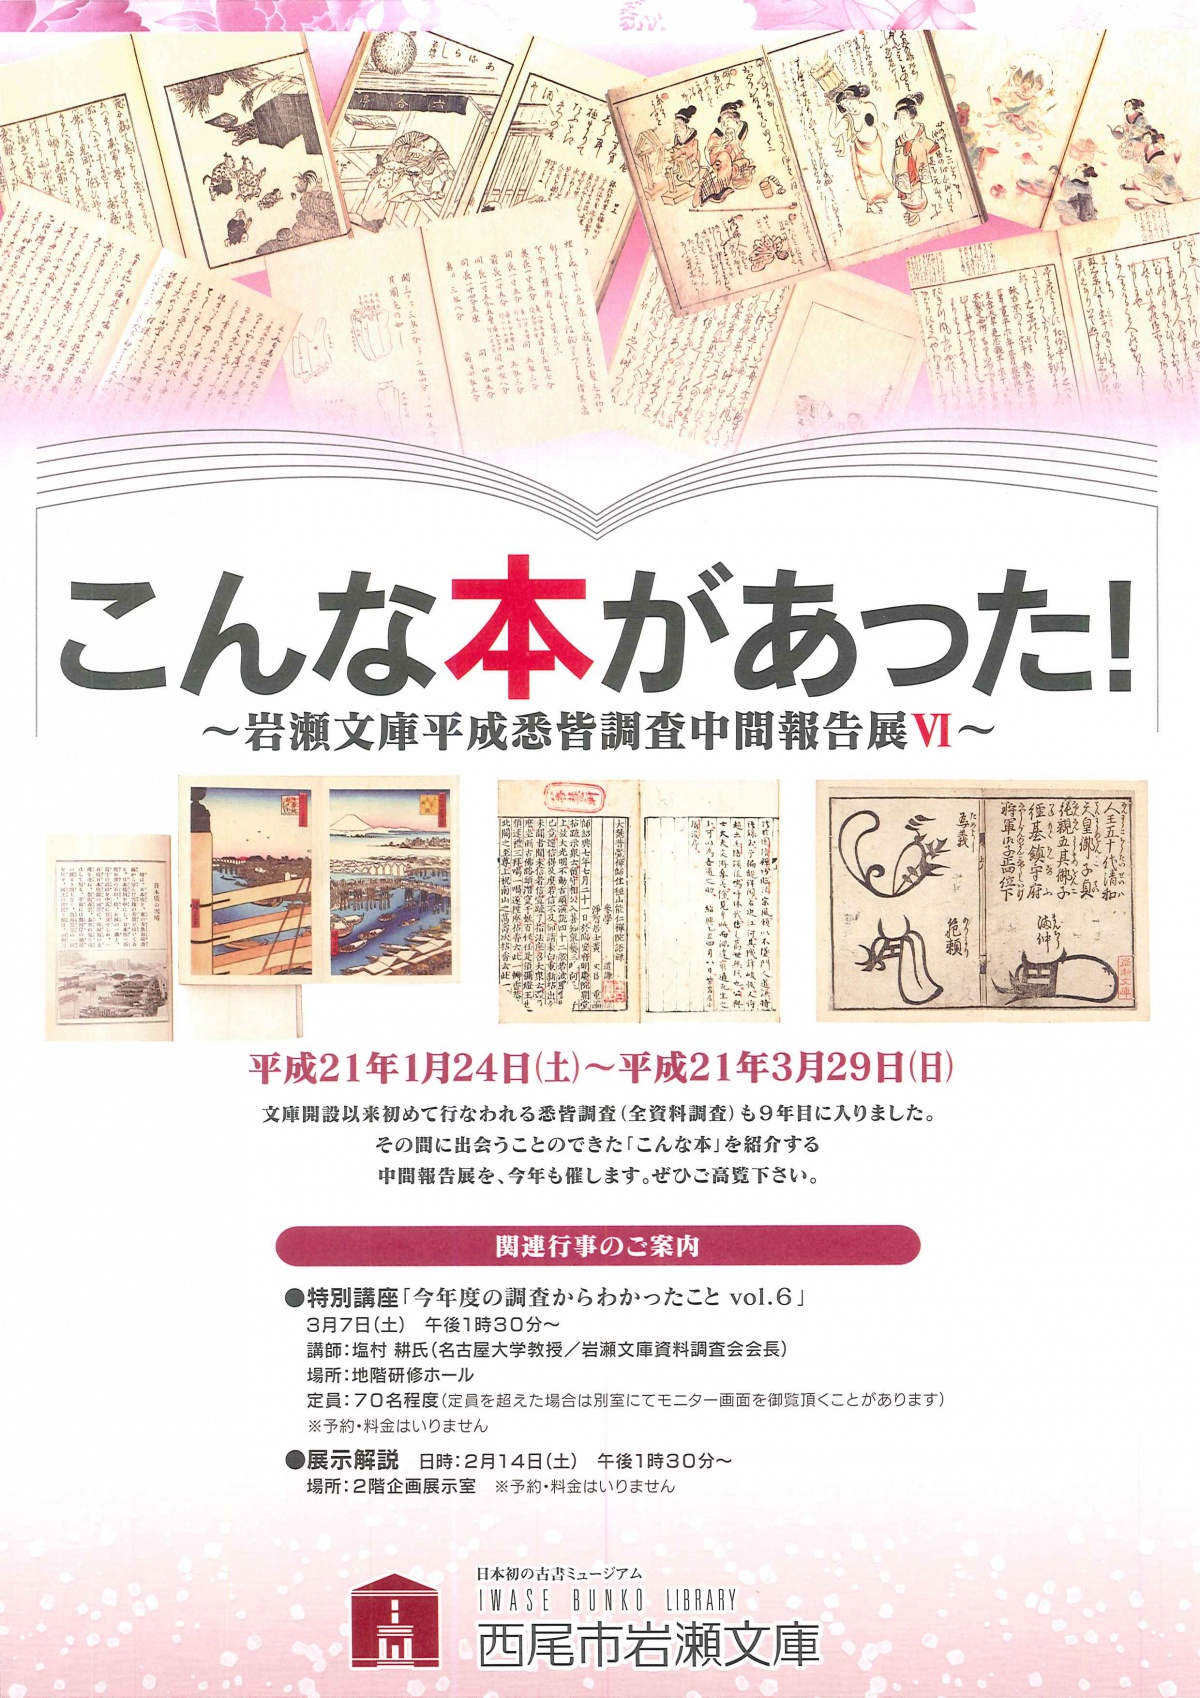 こんな本があった!6 | 企画展示 | 古書の博物館 西尾市岩瀬文庫